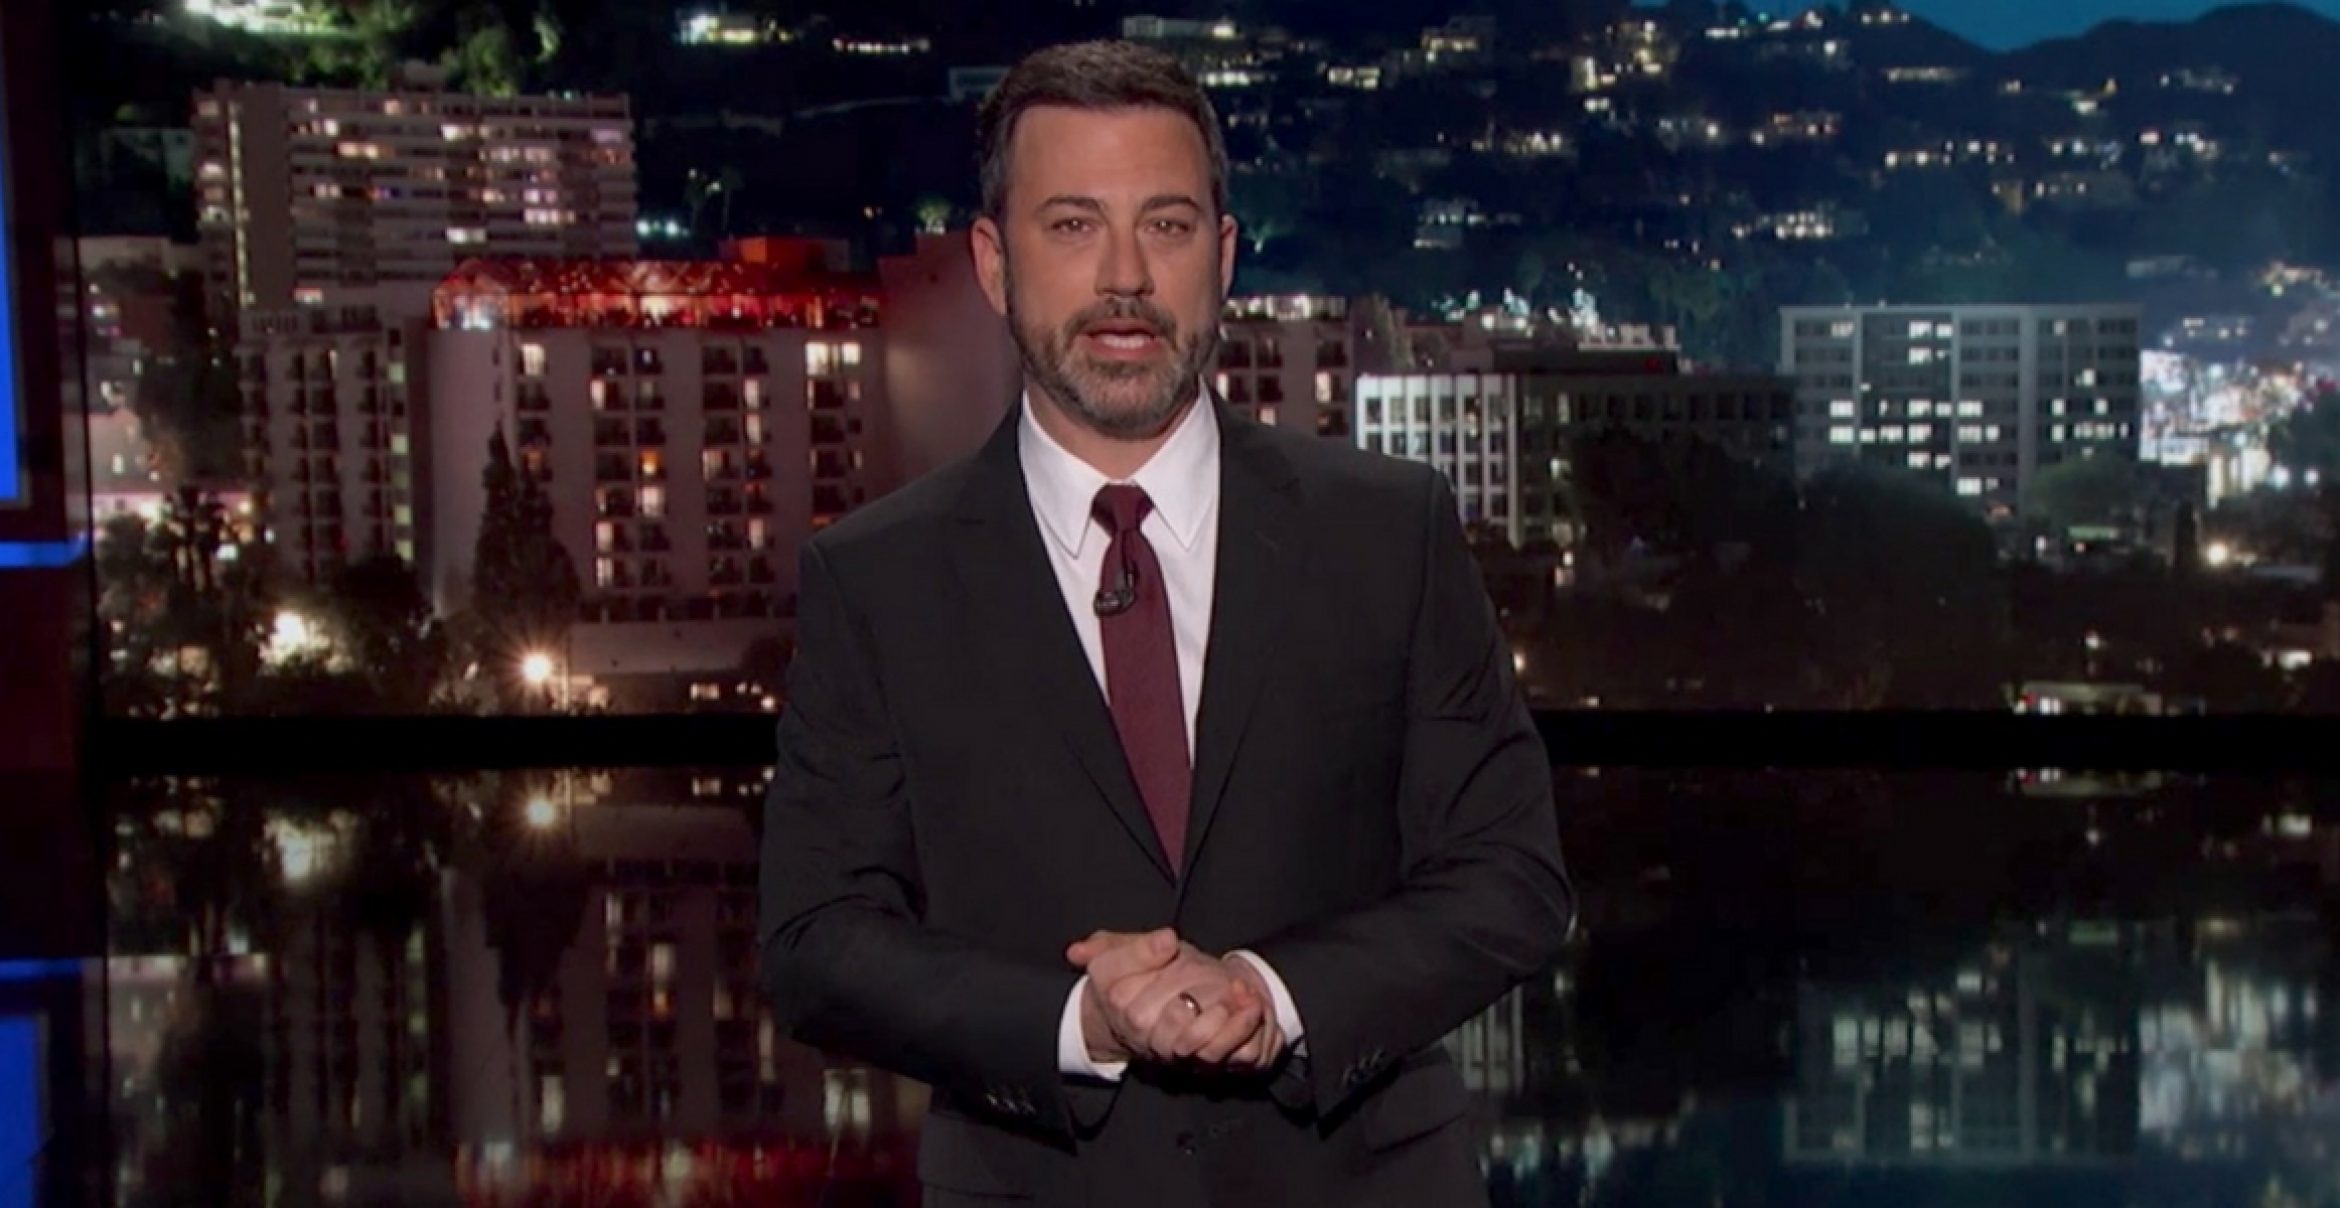 Dieser emotionale Clip von Jimmy Kimmel ging um die Welt – nun reagierte auch Obama darauf